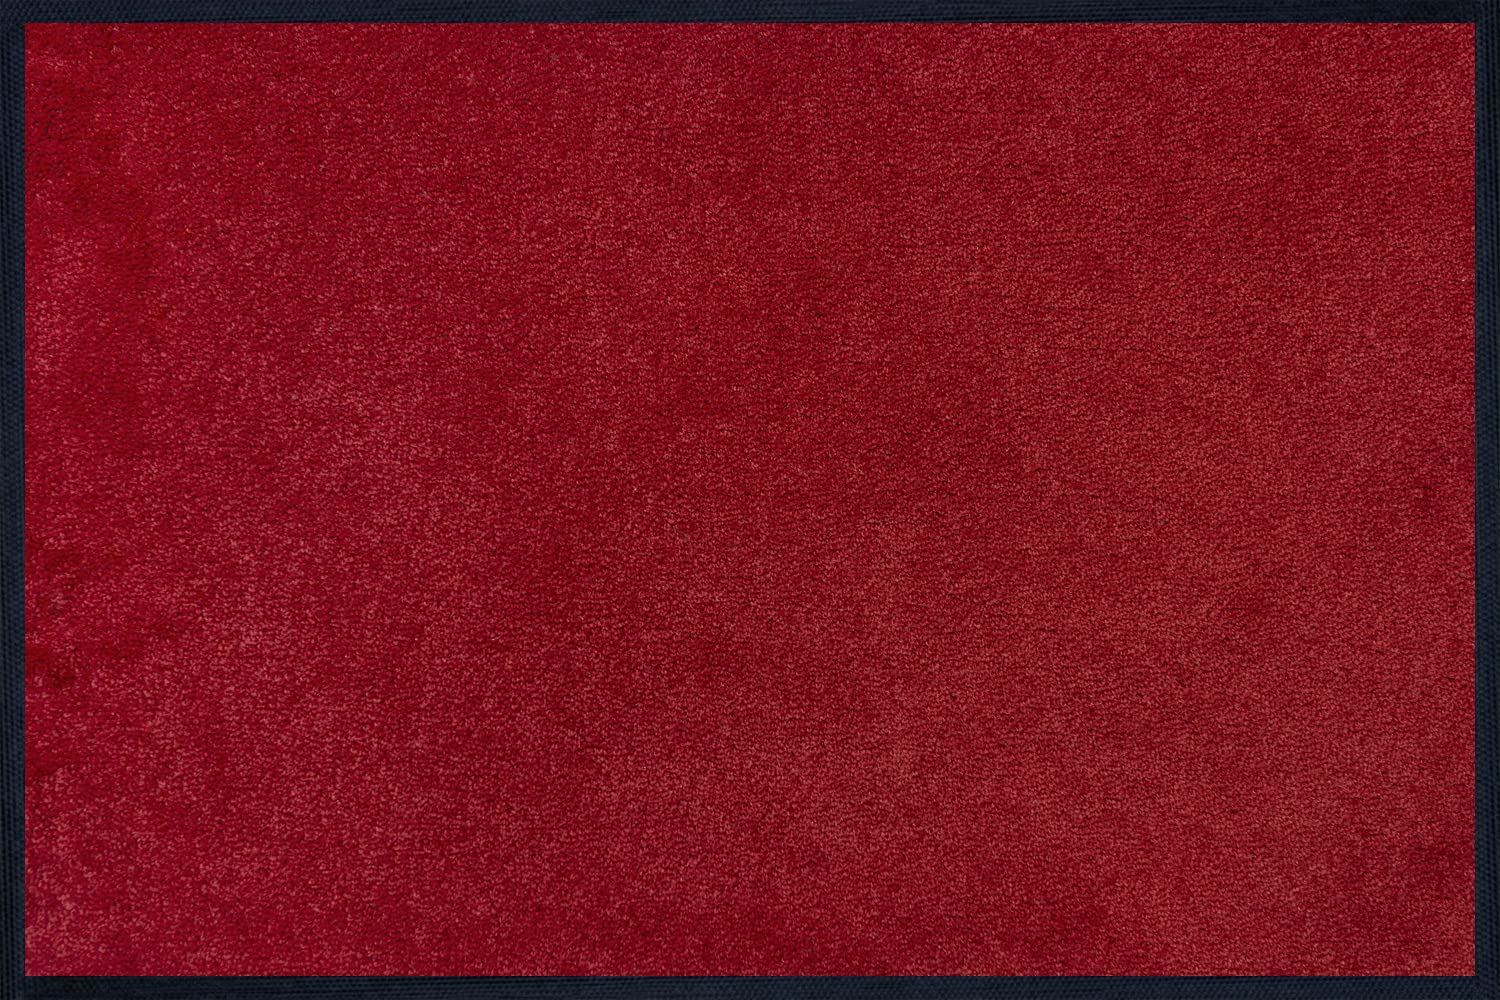 wash+dry Fußmatte, Regal Red 40x60 cm, innen und außen, waschbar